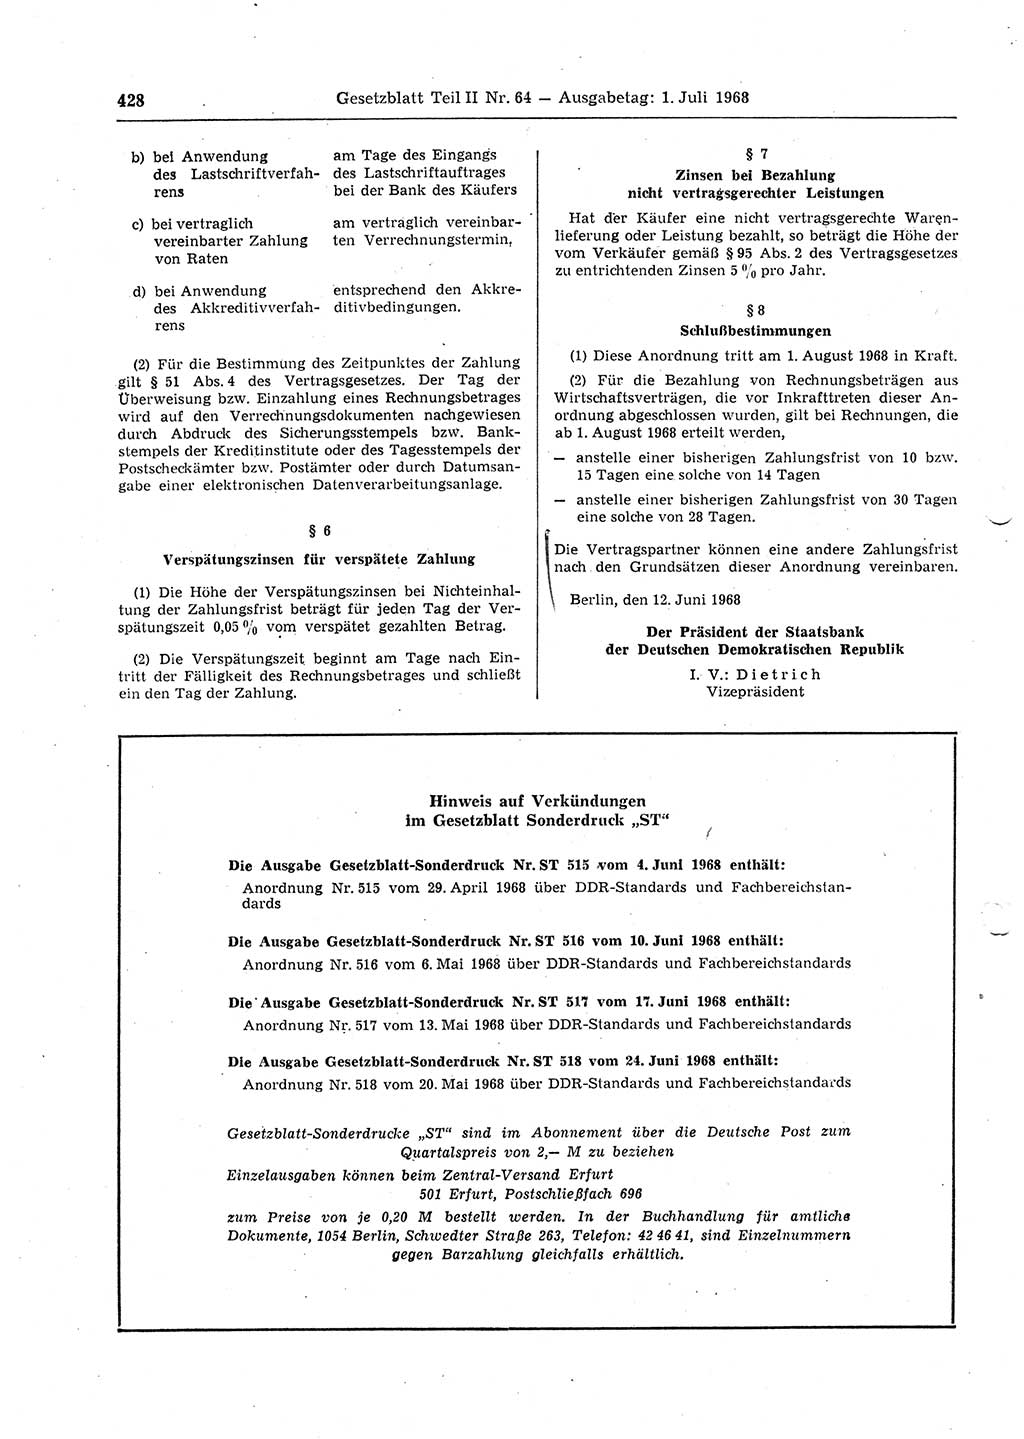 Gesetzblatt (GBl.) der Deutschen Demokratischen Republik (DDR) Teil ⅠⅠ 1968, Seite 428 (GBl. DDR ⅠⅠ 1968, S. 428)